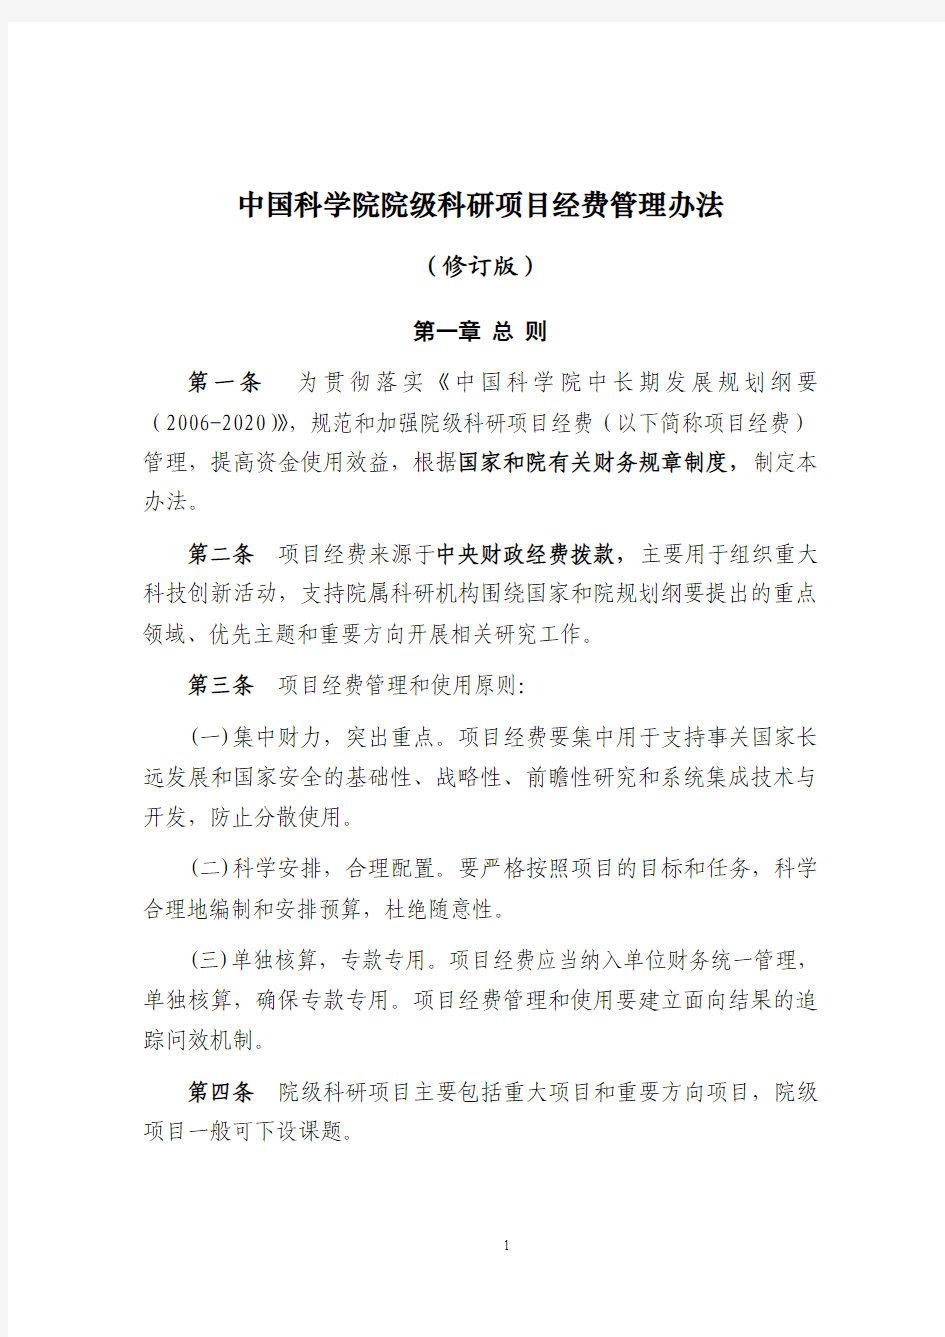 中国科学院院级科研项目经费管理办法(修订版)